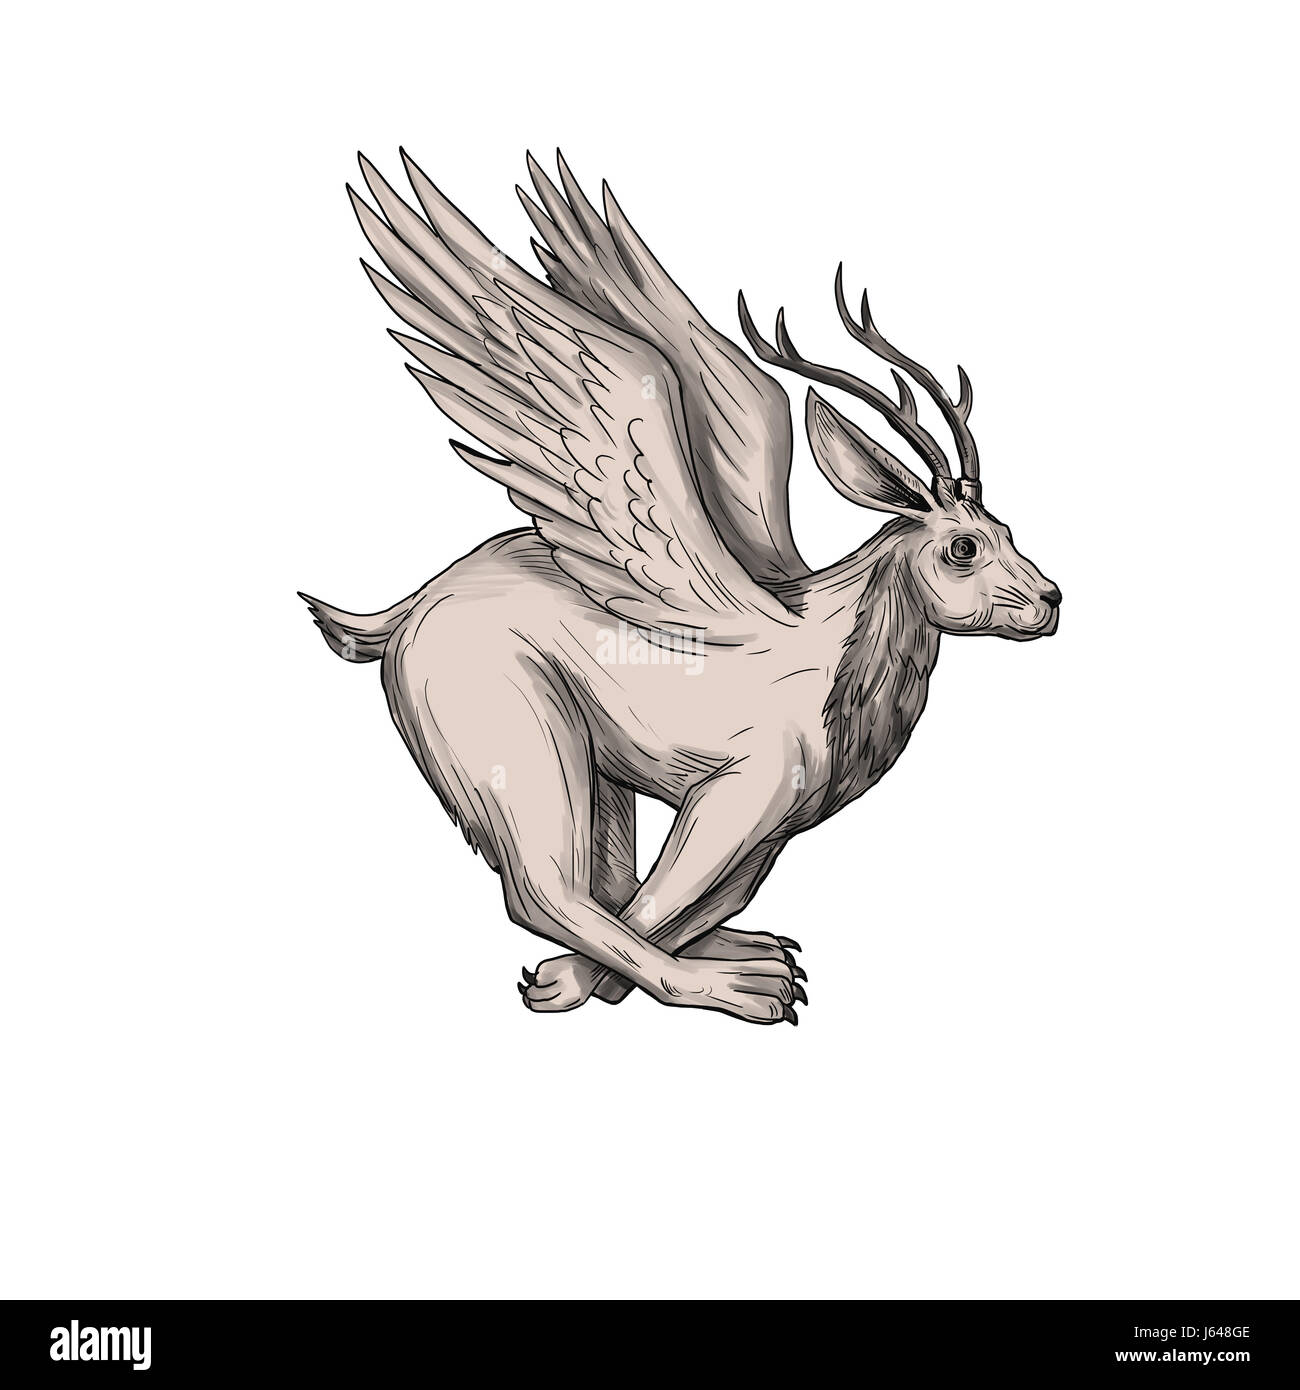 Illustration d'un style de tatouage, Wolpertinger bavarois dans le folklore, un lièvre mythique avec bois, crocs et wings running vu du côté situé sur i Banque D'Images